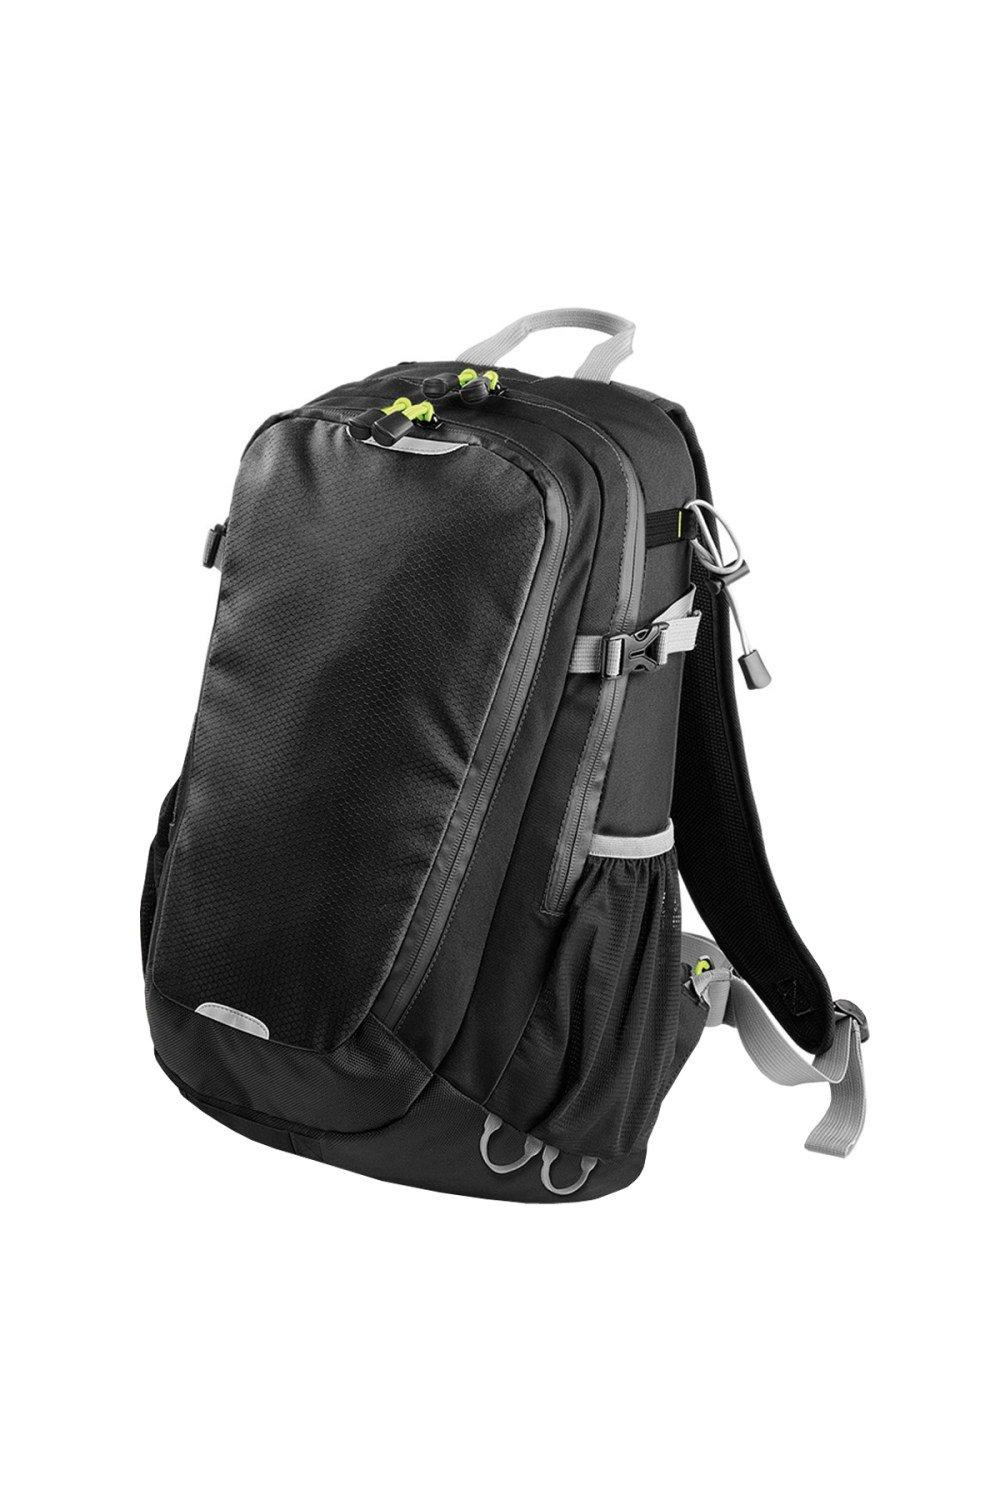 Рюкзак Apex Daypack объемом 20 литров (20 л, ноутбук с диагональю до 15,6 дюйма) Quadra, черный чехол mypads портрет с кракеном для motorola defy 2021 задняя панель накладка бампер